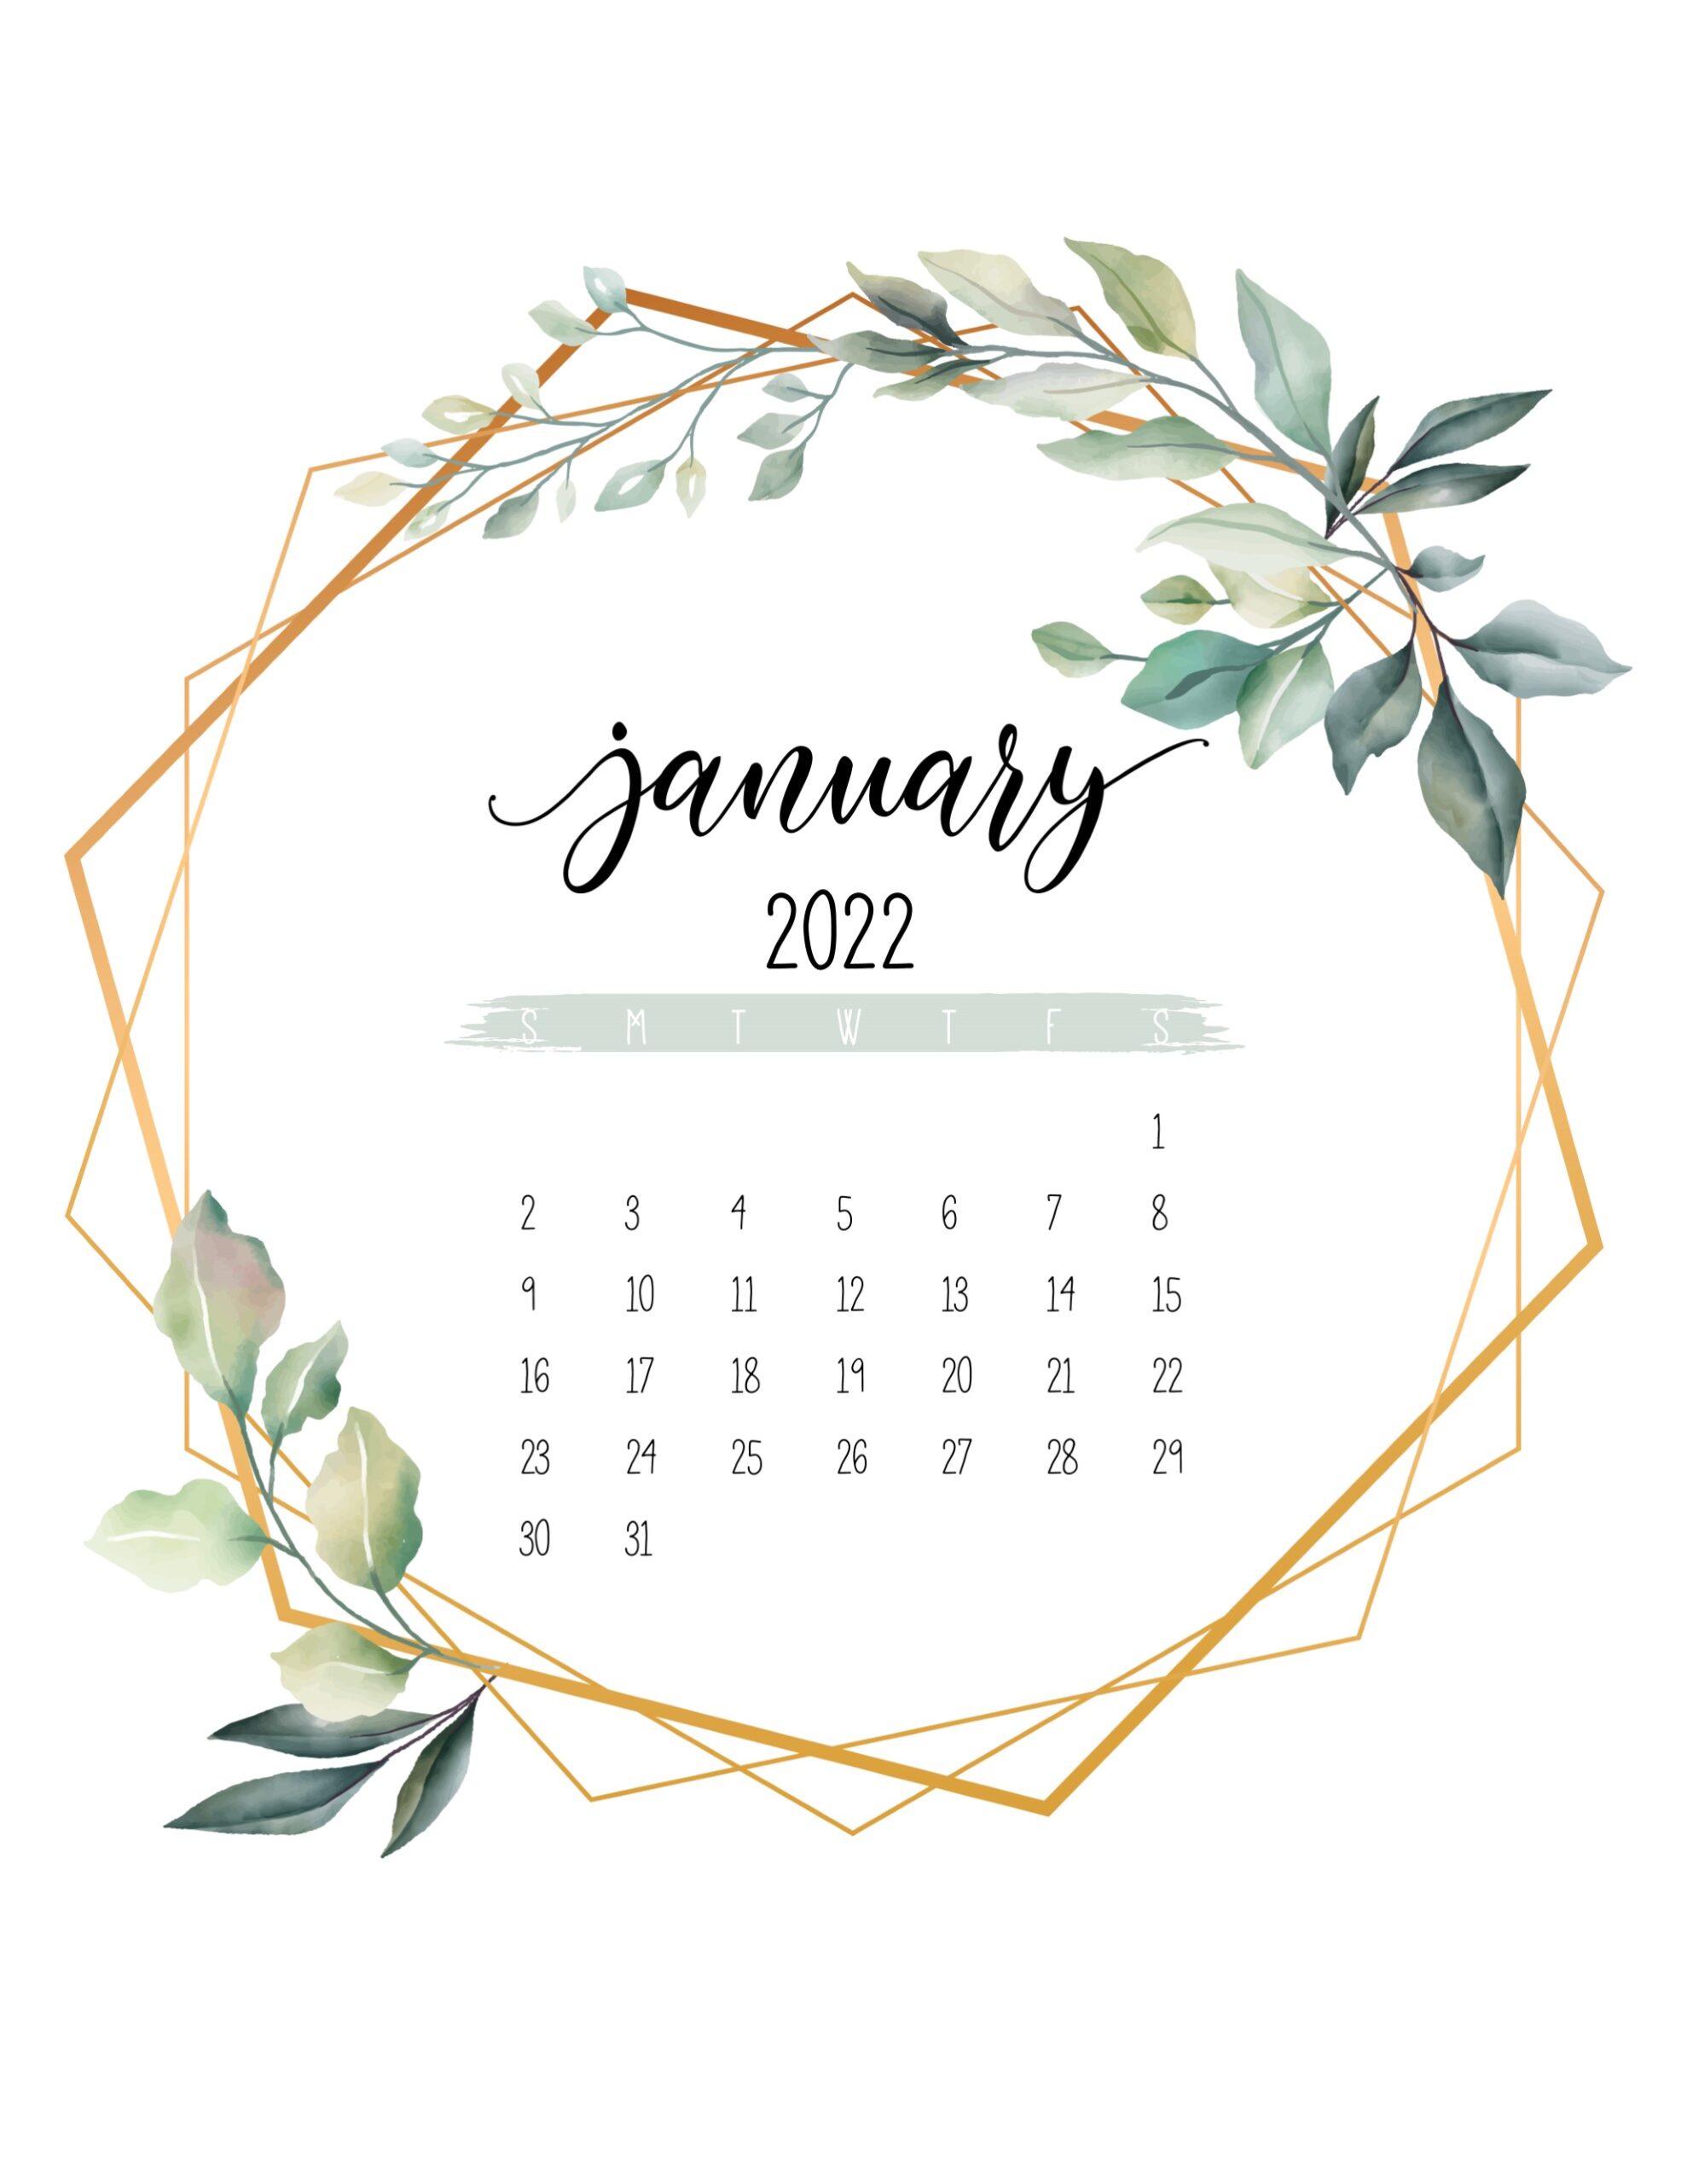 Calendario 2022 jardim botanico janeiro